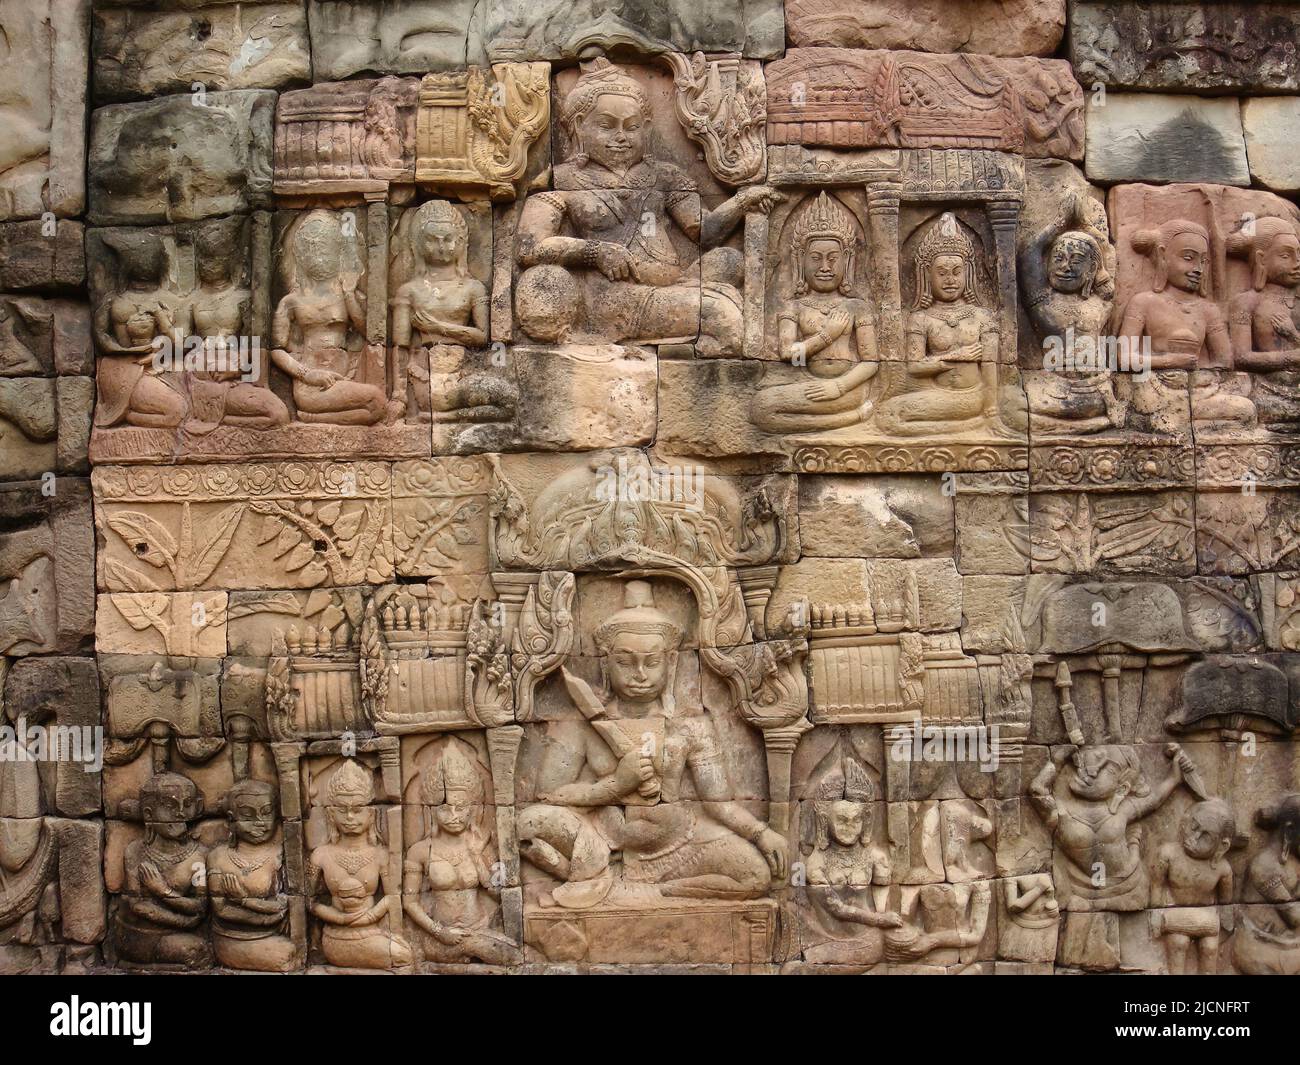 Alcuni dettagli architettonici del favoloso tempio di Angkor Wat, il simbolo nazionale della Cambogia, un capolavoro della civiltà khmer Foto Stock